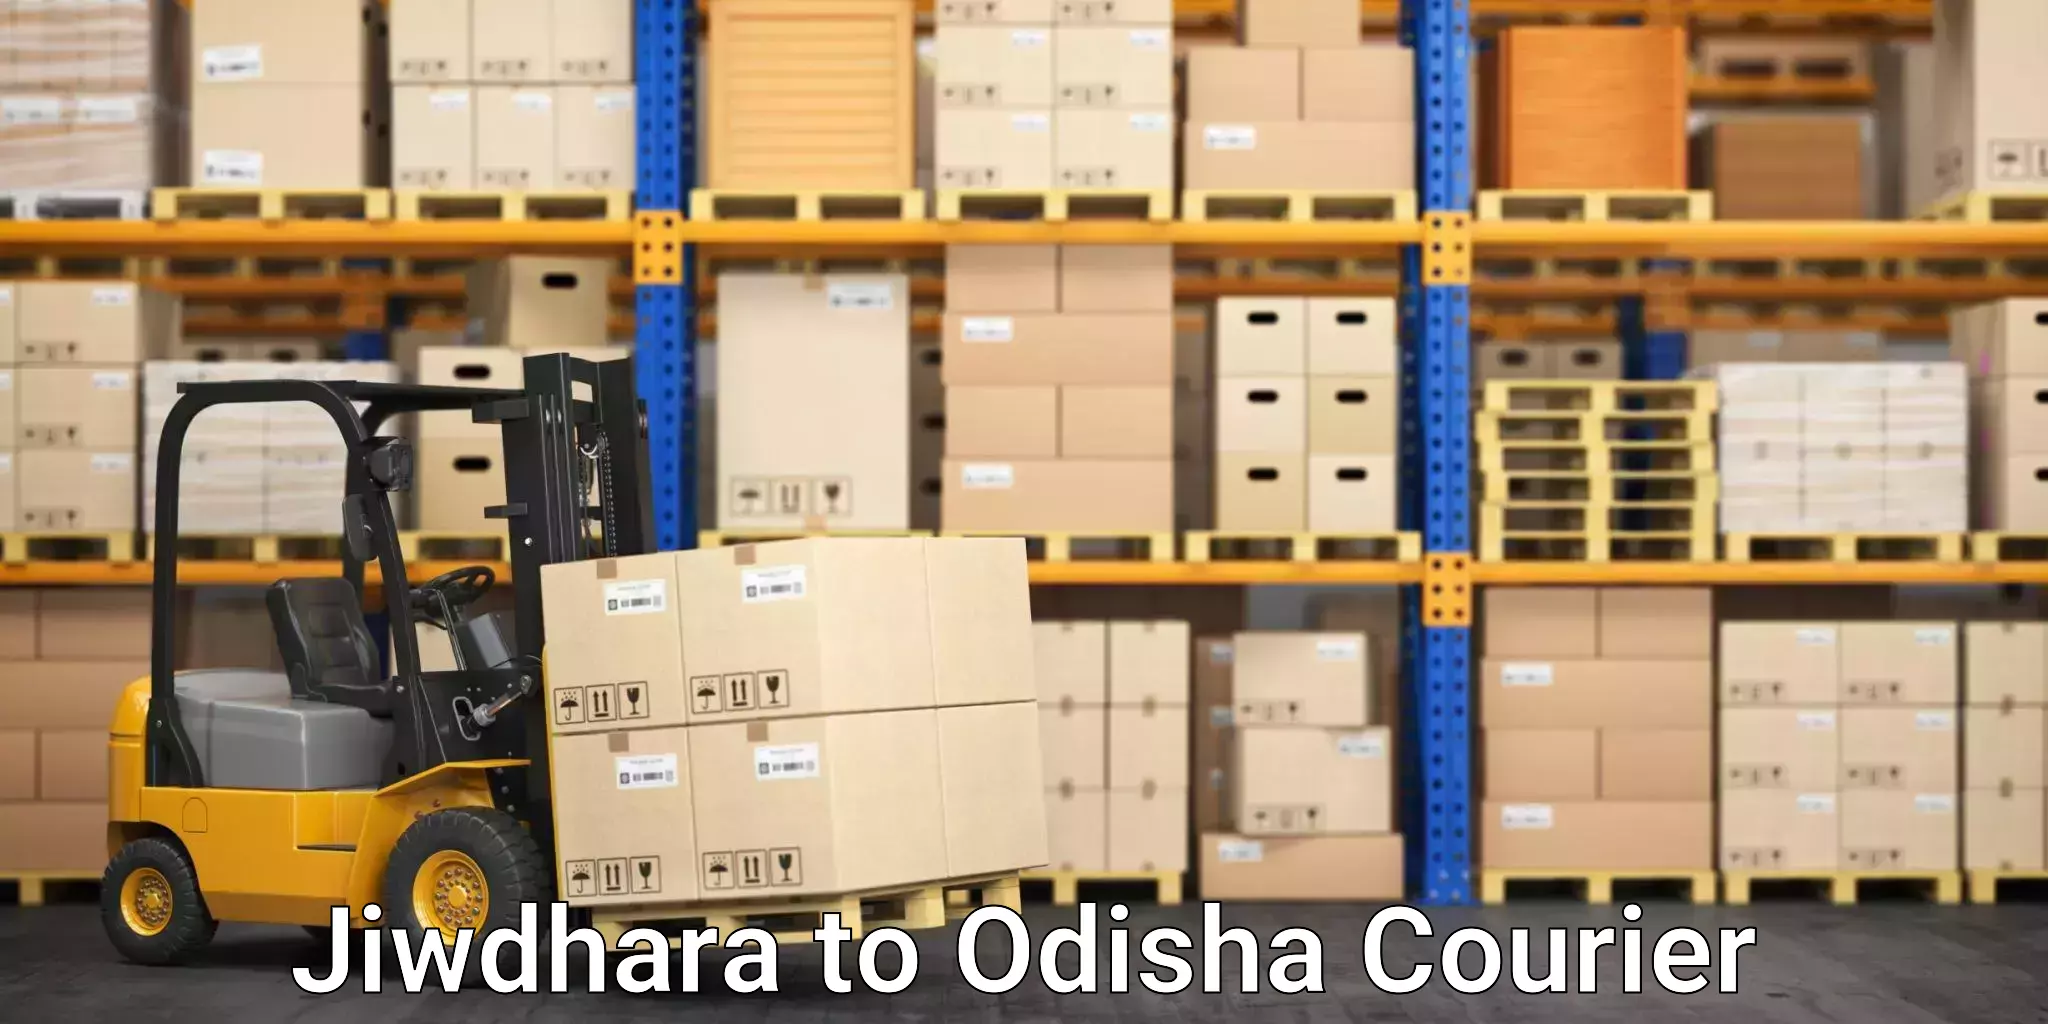 Furniture shipping services in Jiwdhara to Kalinga Institute of Industrial Technology Bhubaneswar